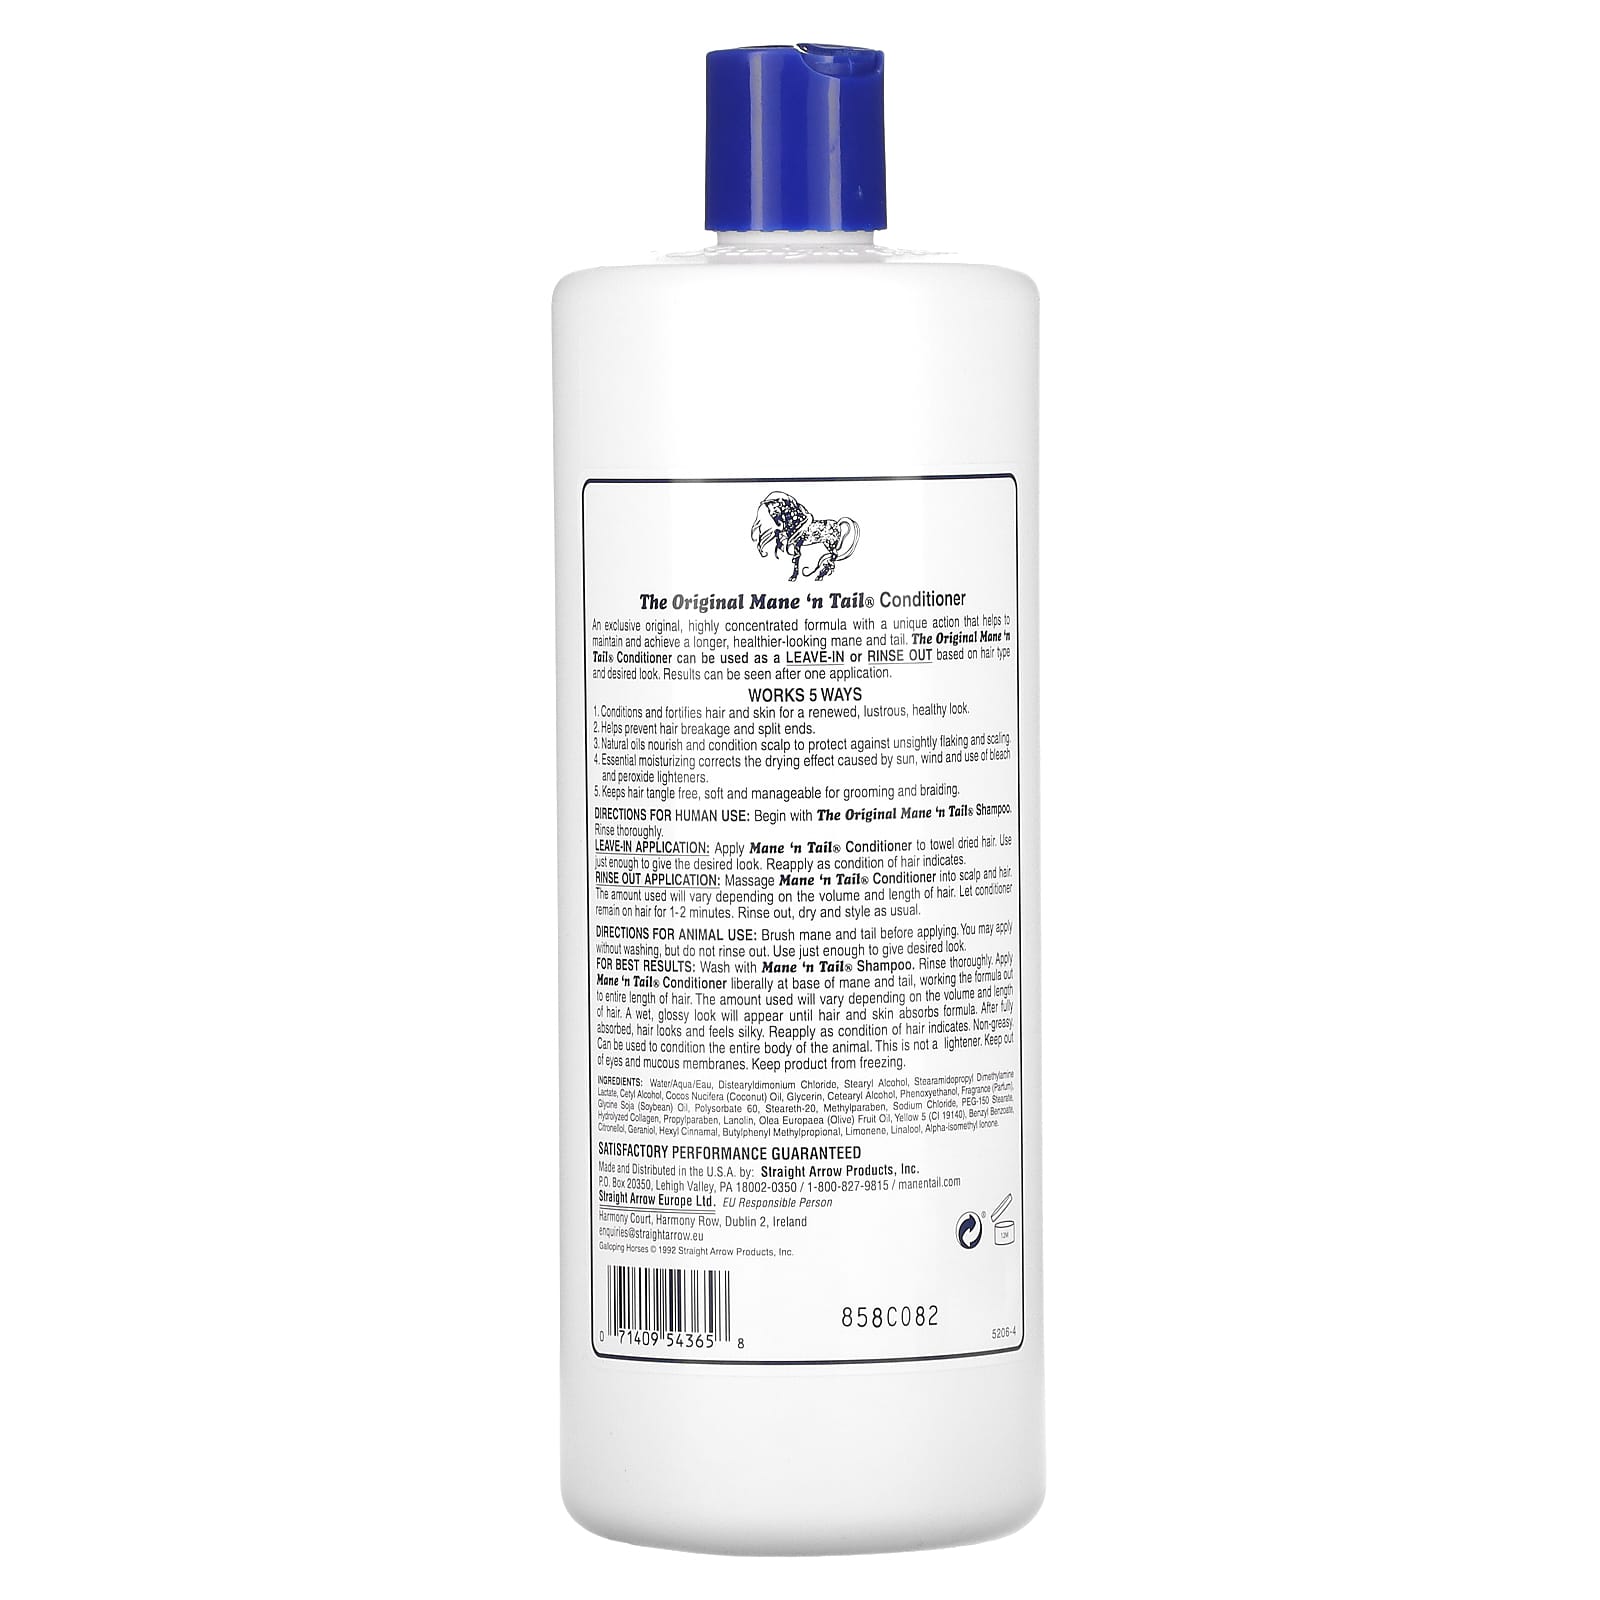 Mane n tail conditioner hair moisturizer-texturizer for healthier looking hair - 32 fl oz (946 ml)